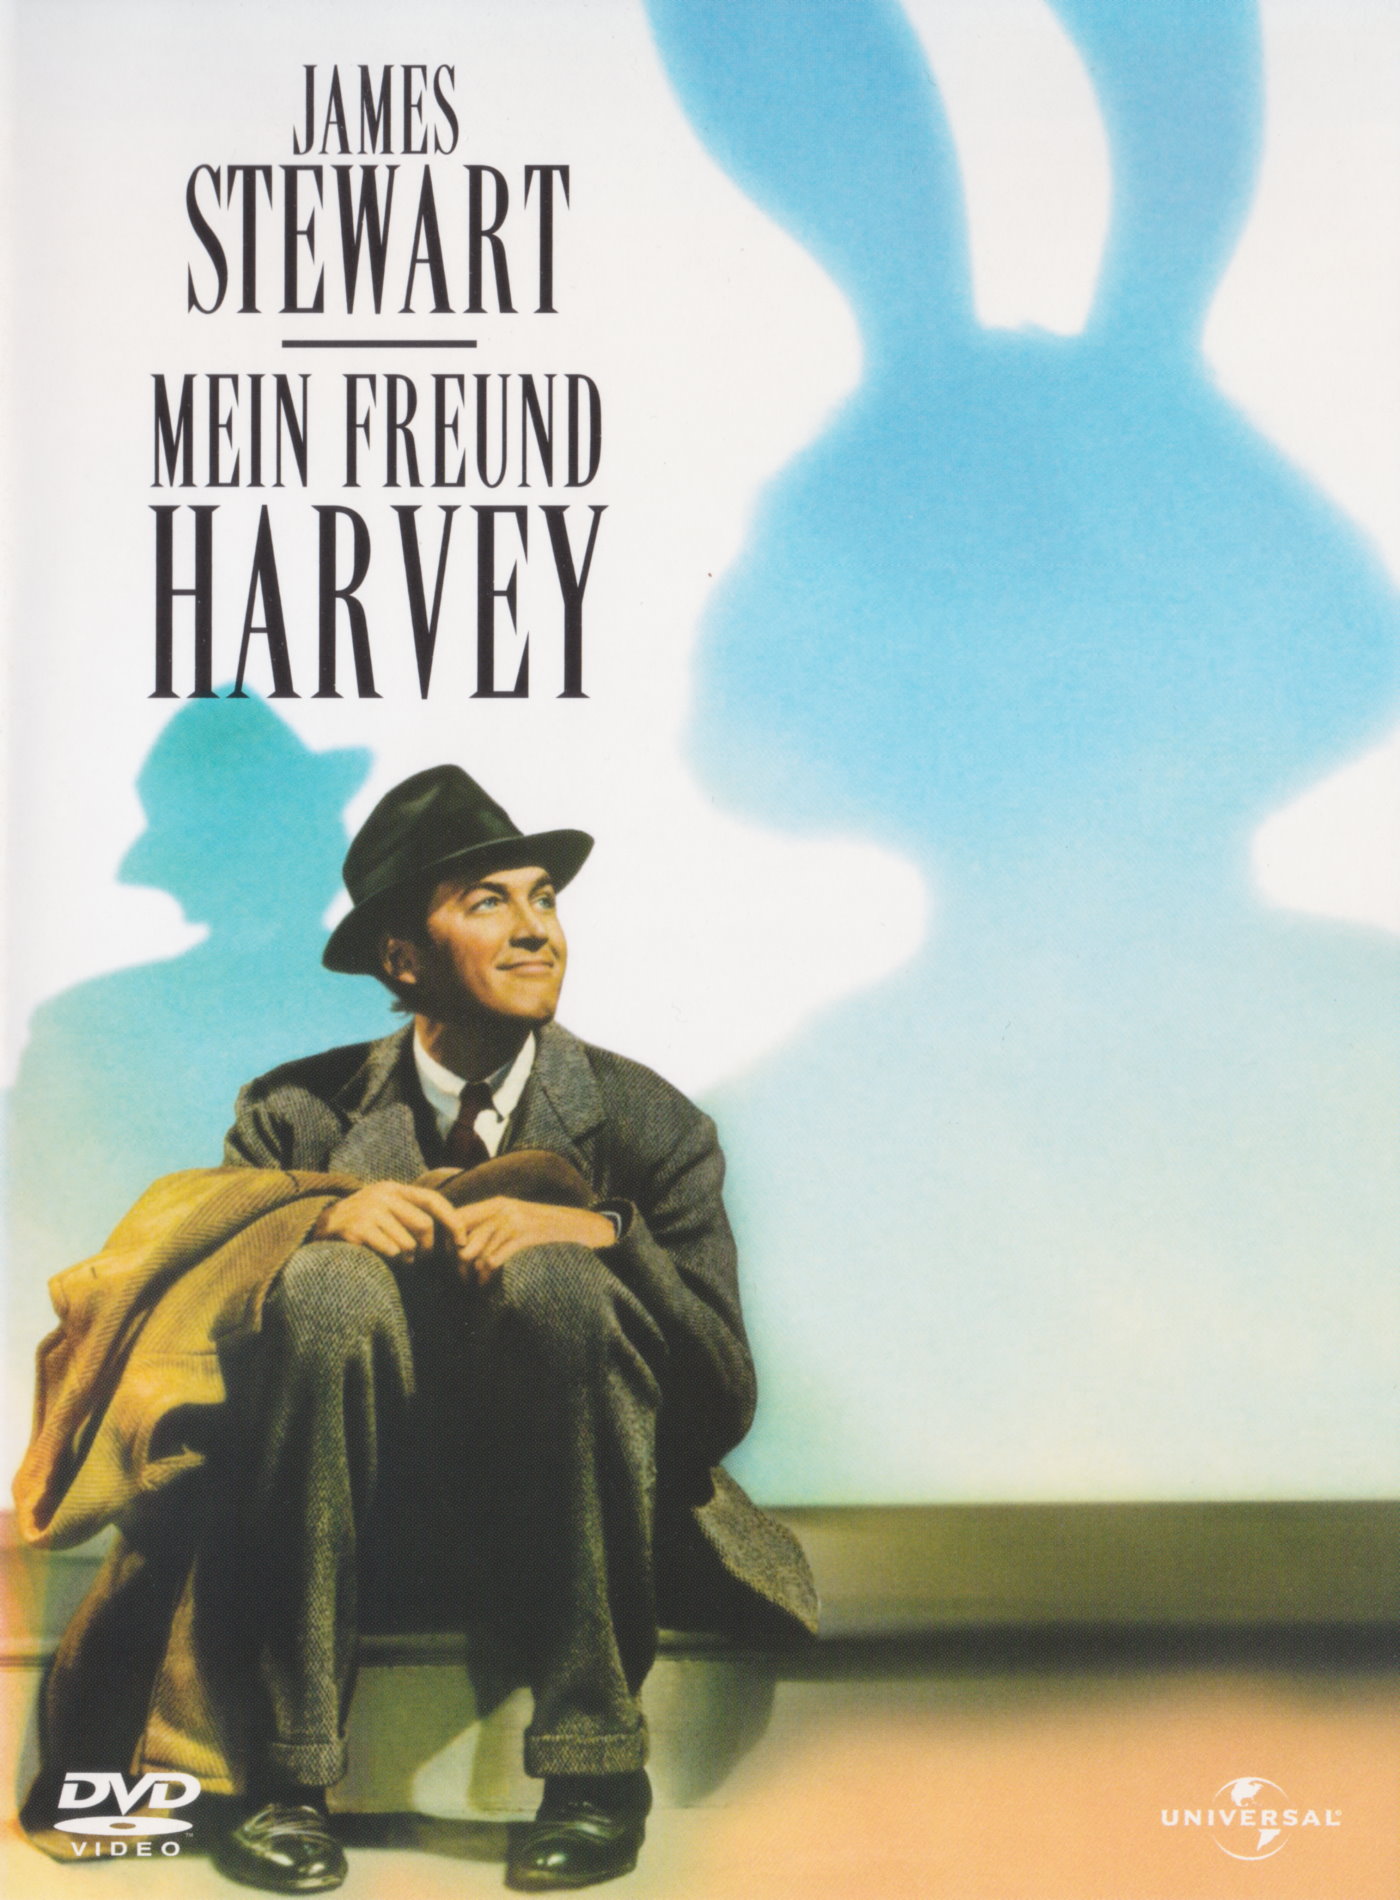 Cover - Mein Freund Harvey.jpg